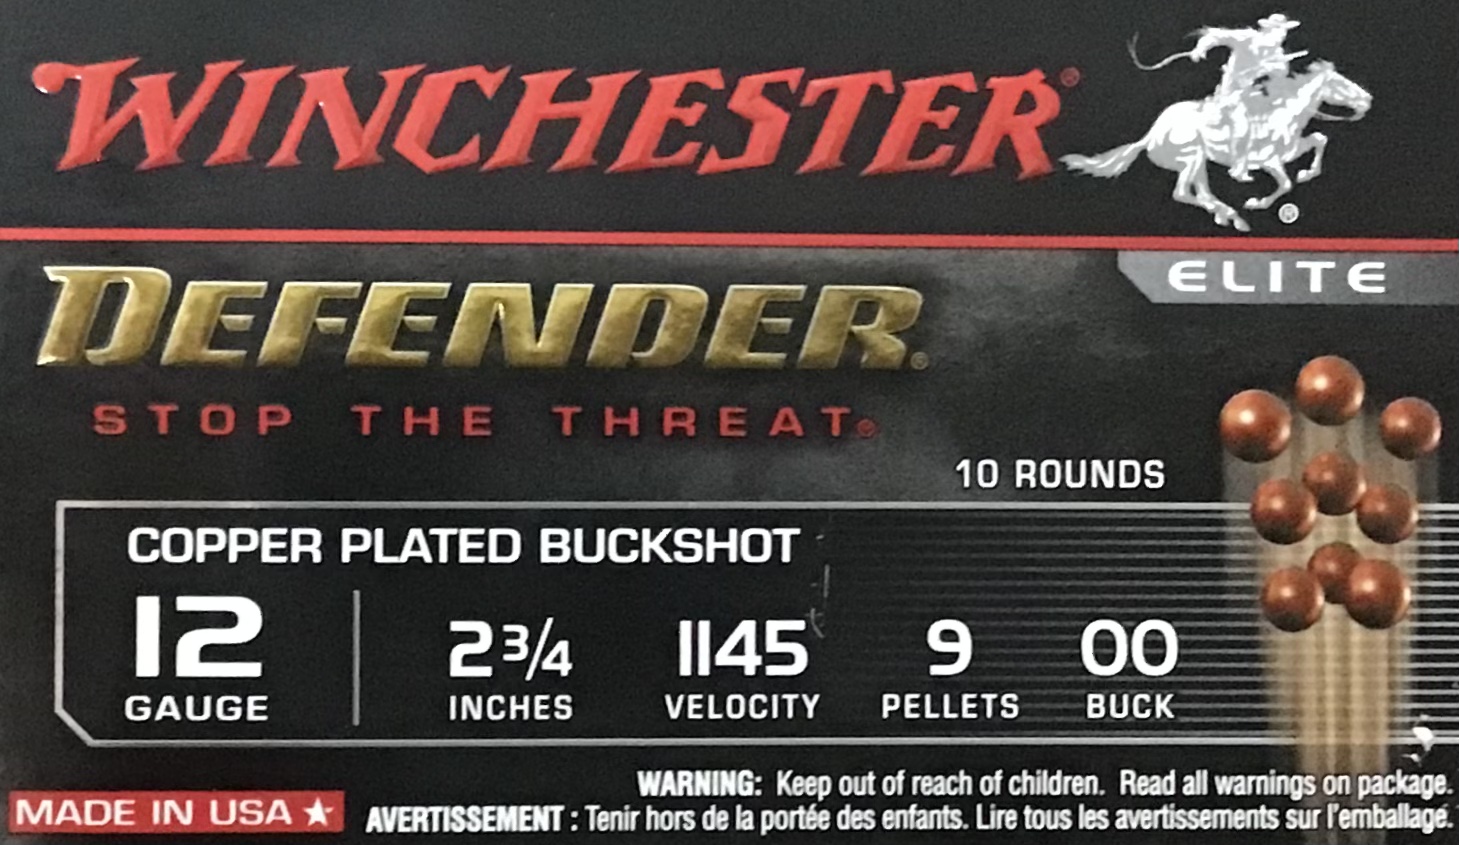 12 Gauge Winchester Defender Elite 2 3/4 in 9 pellets 00 Buck 100 rnds Copper Plated Buckshot (10 boxes) M-ID: SB1200PD UPC: 020892026520